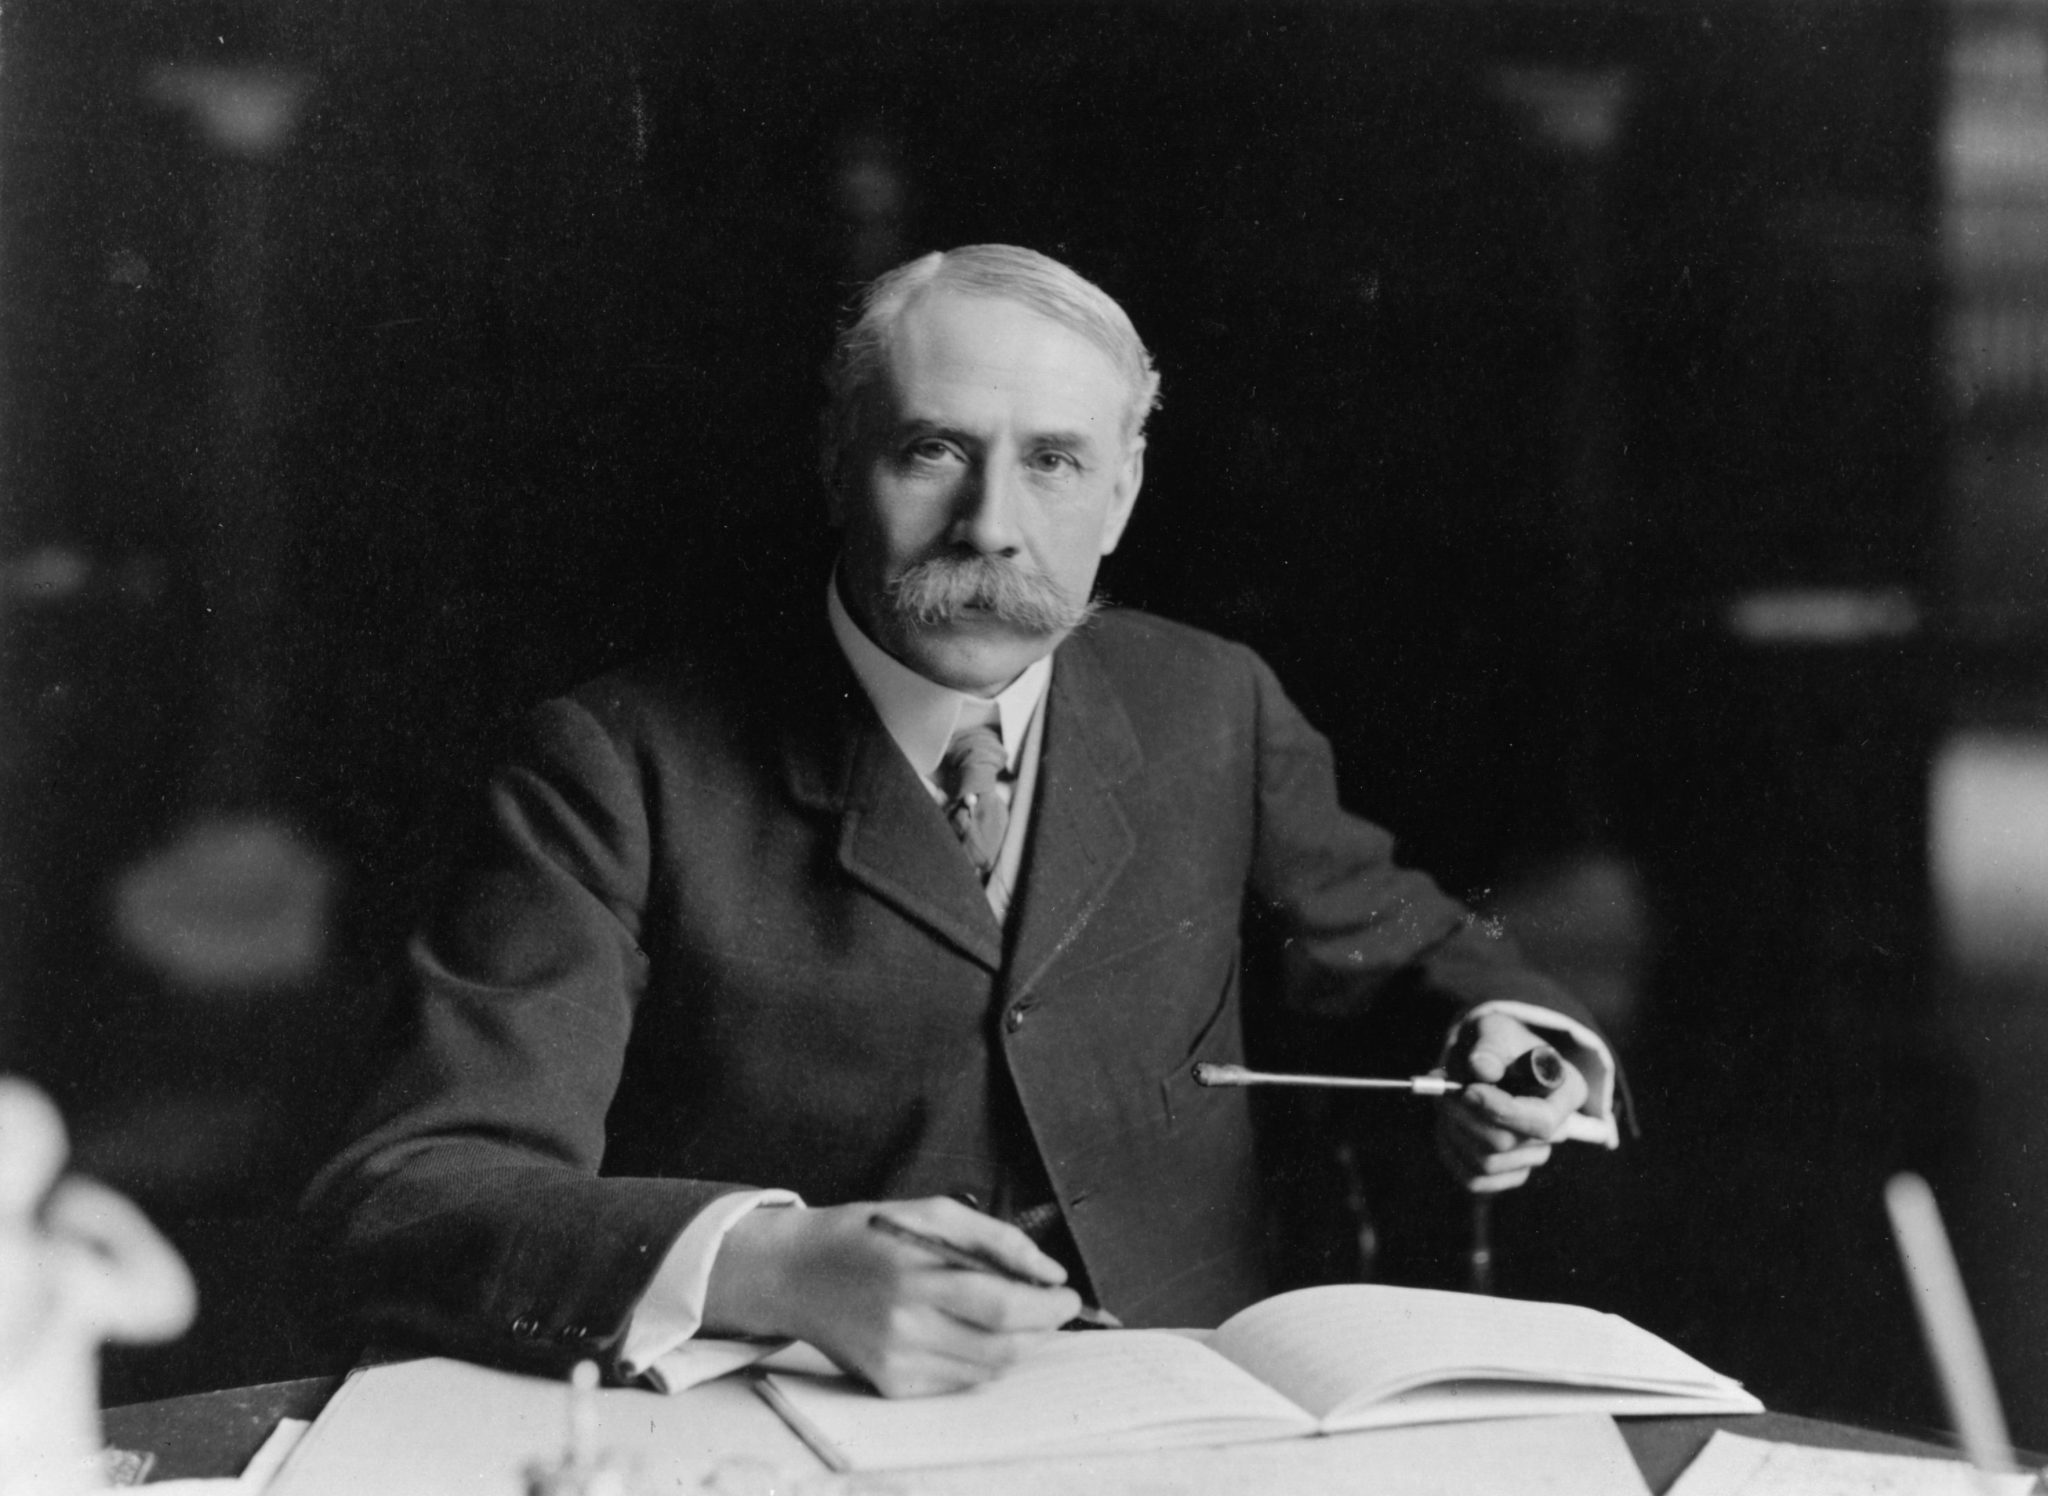 O enigma de Elgar